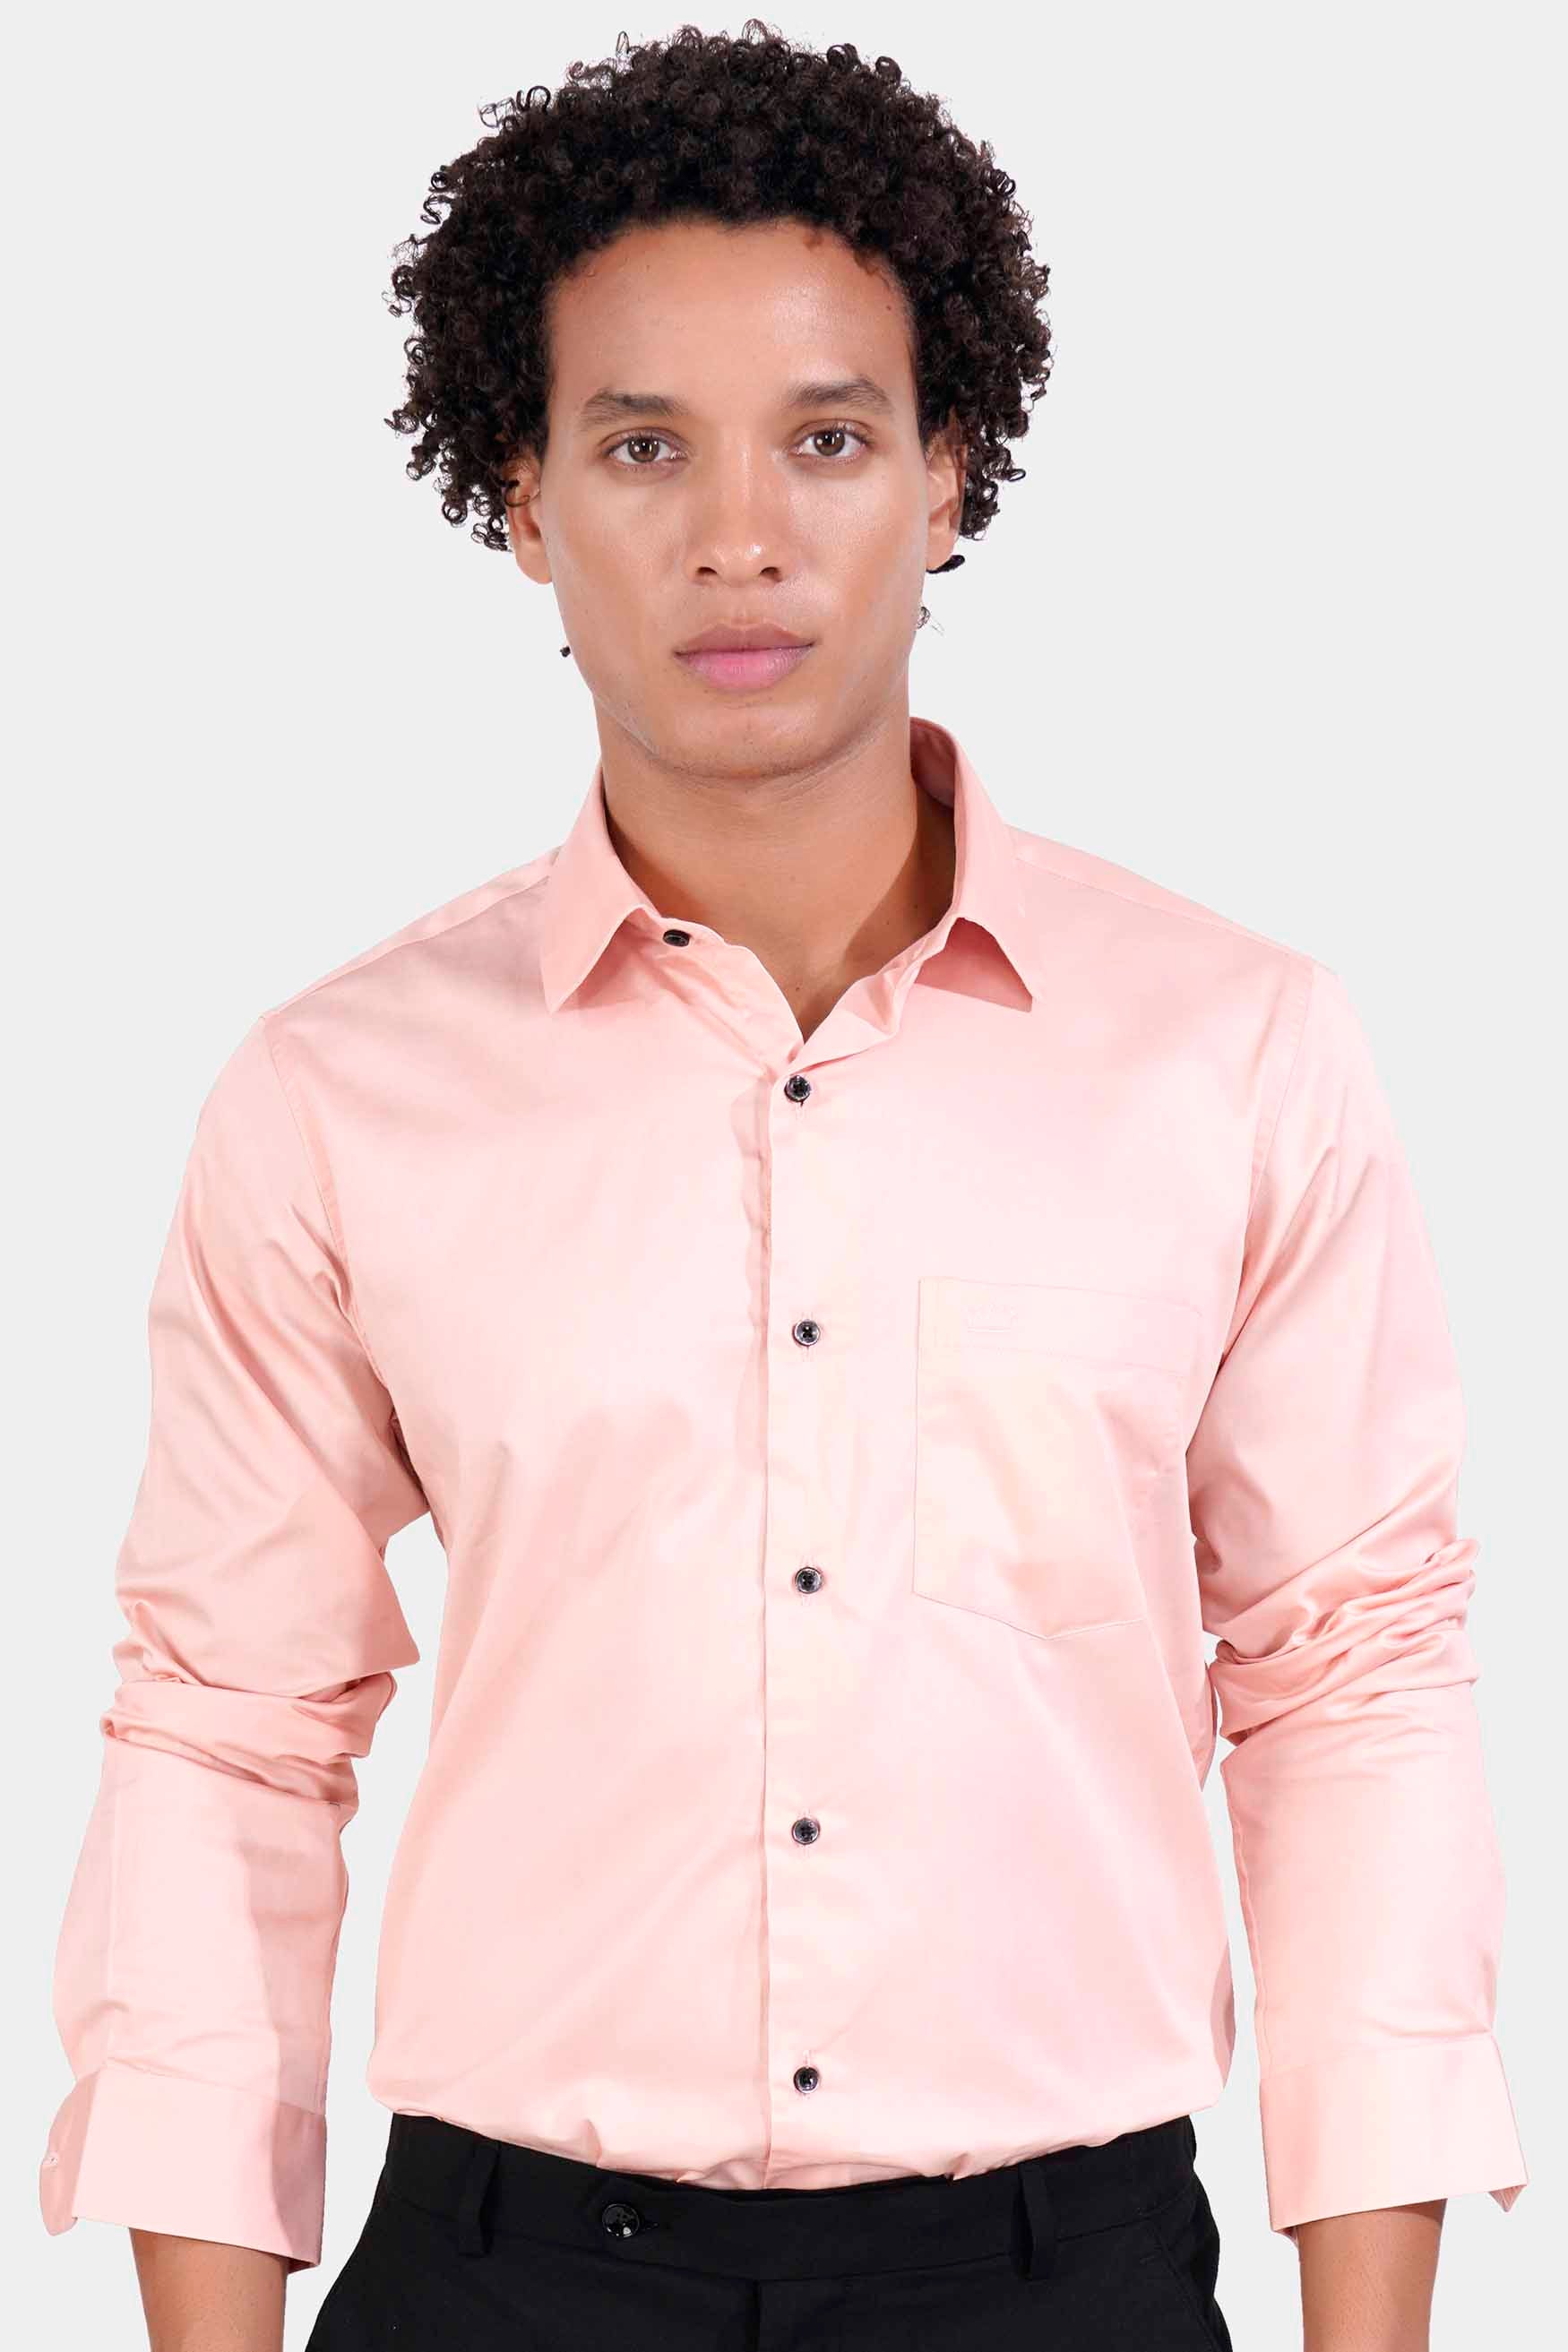 Crepe Peach Subtle Sheen Super Soft Premium Cotton Shirt